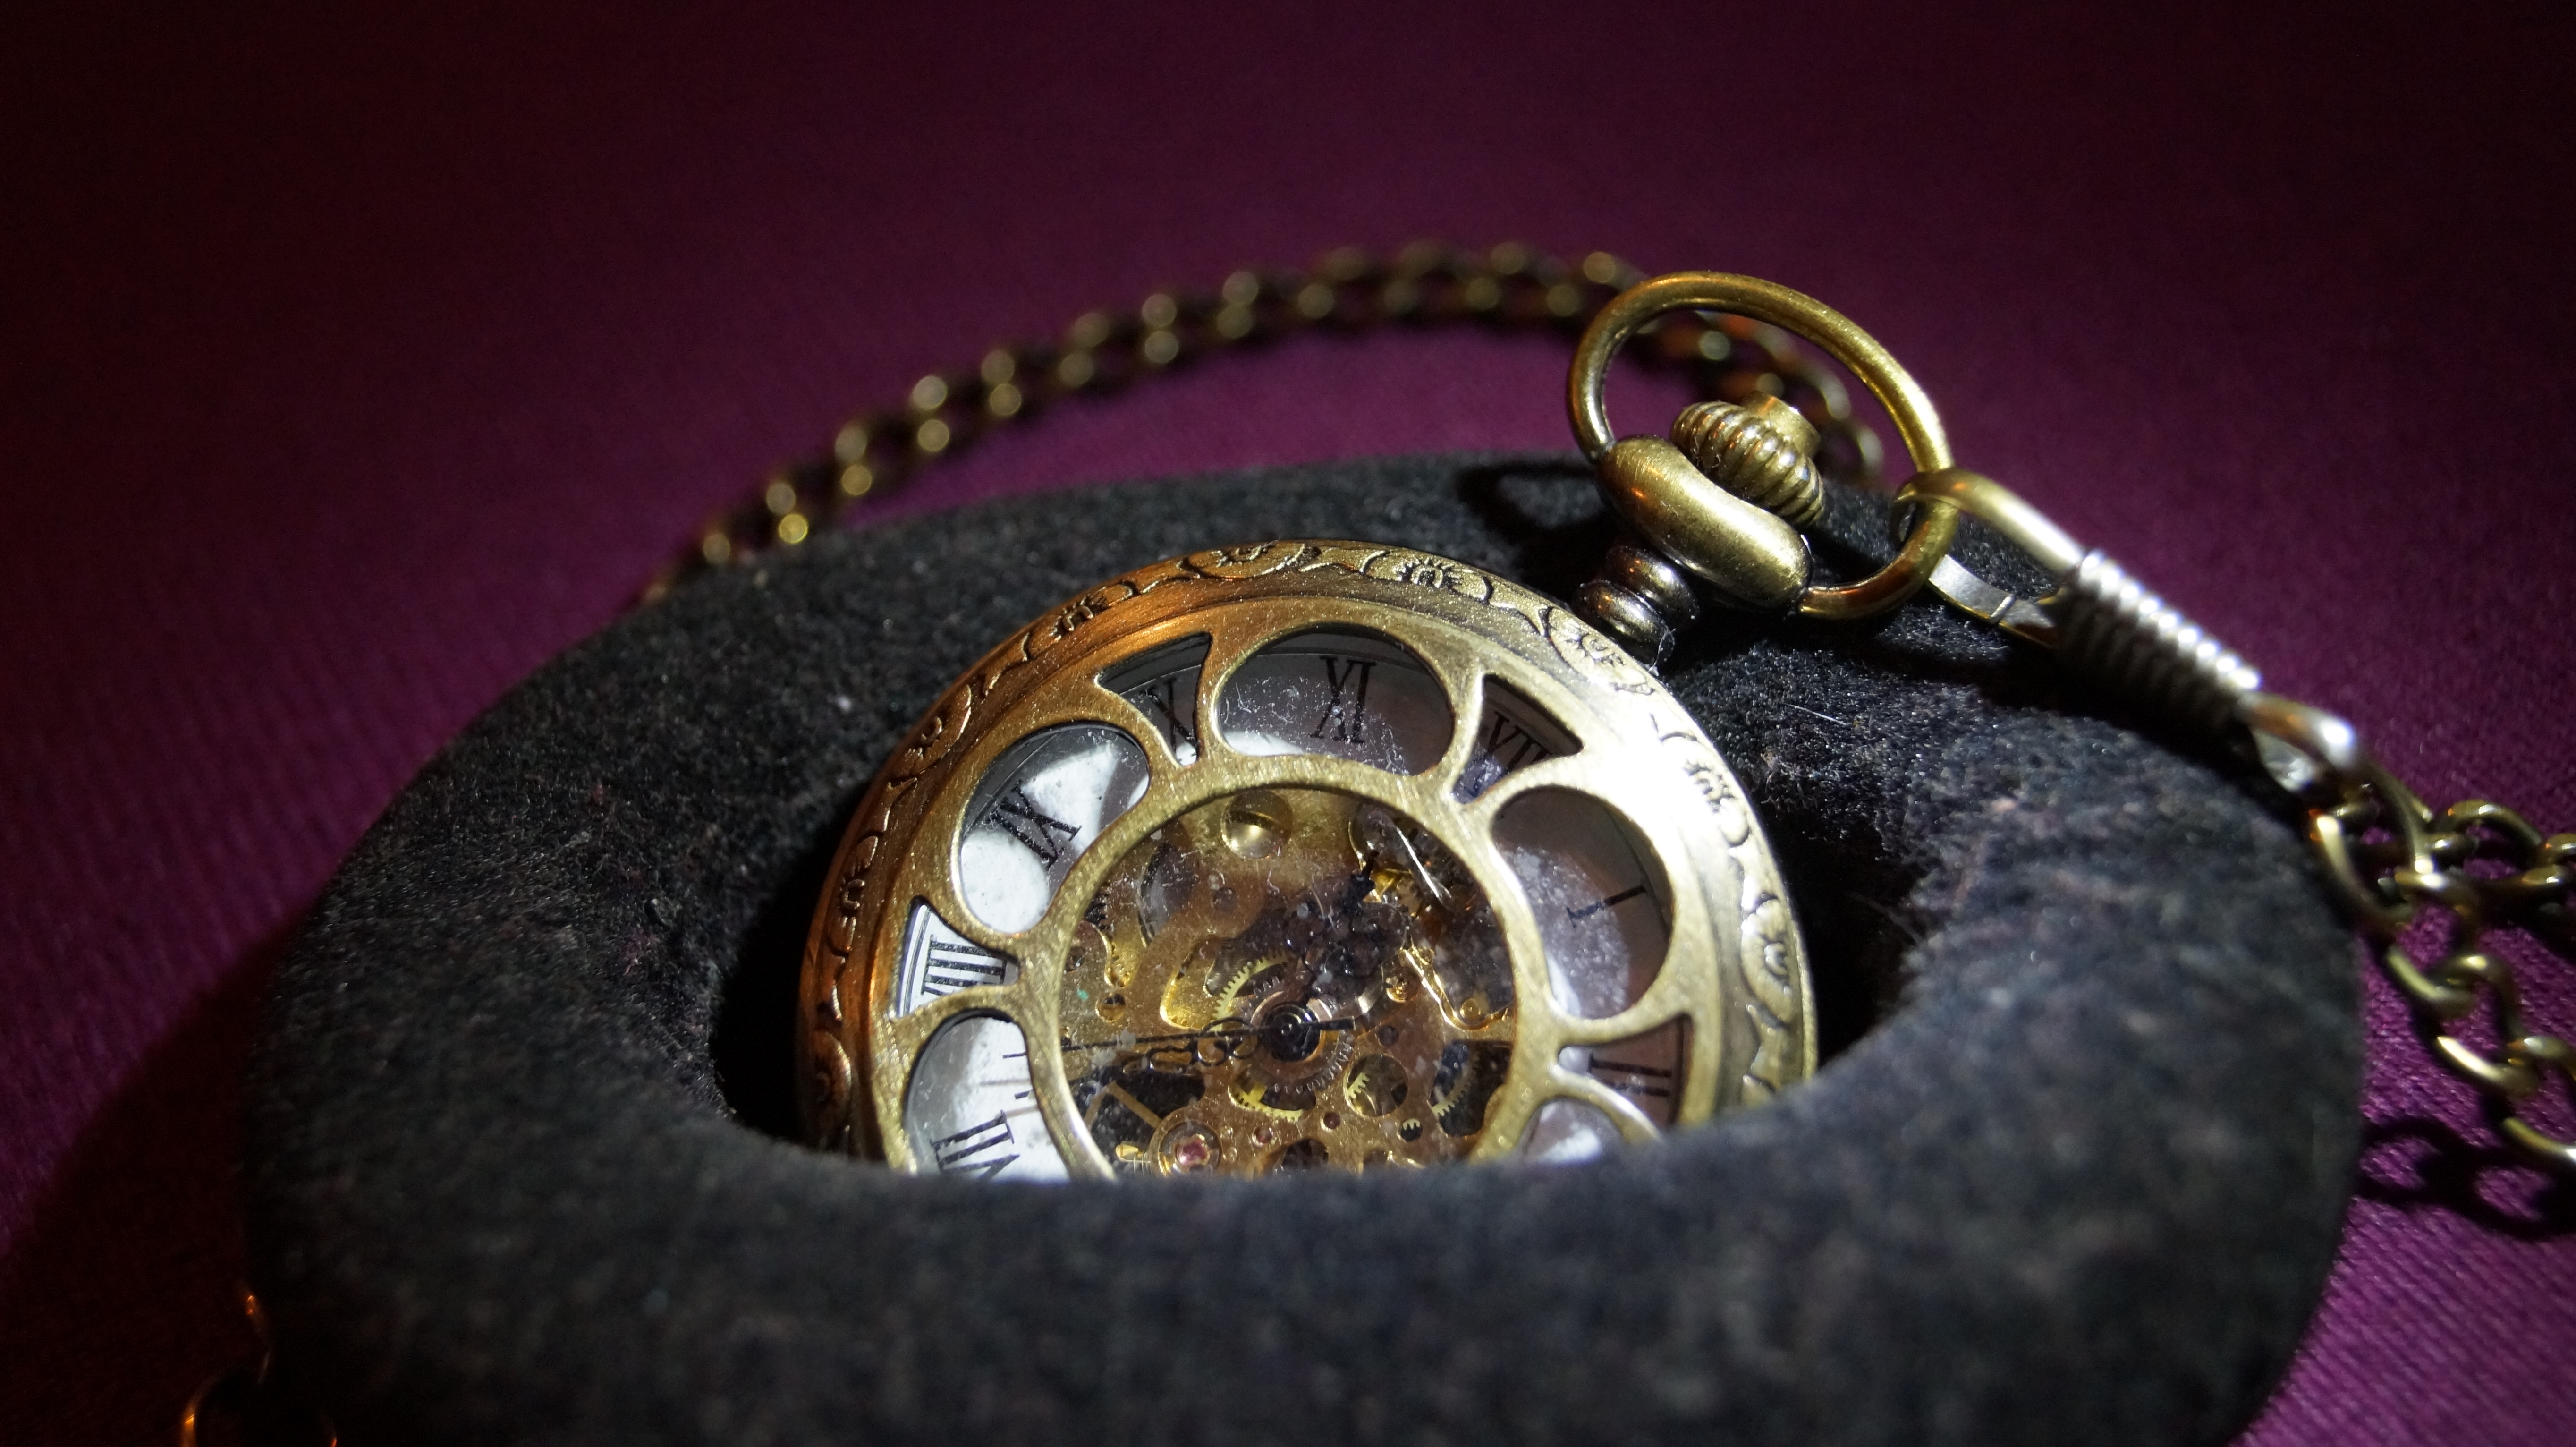 Old Pocket Watch Steel Watch 5456x3064